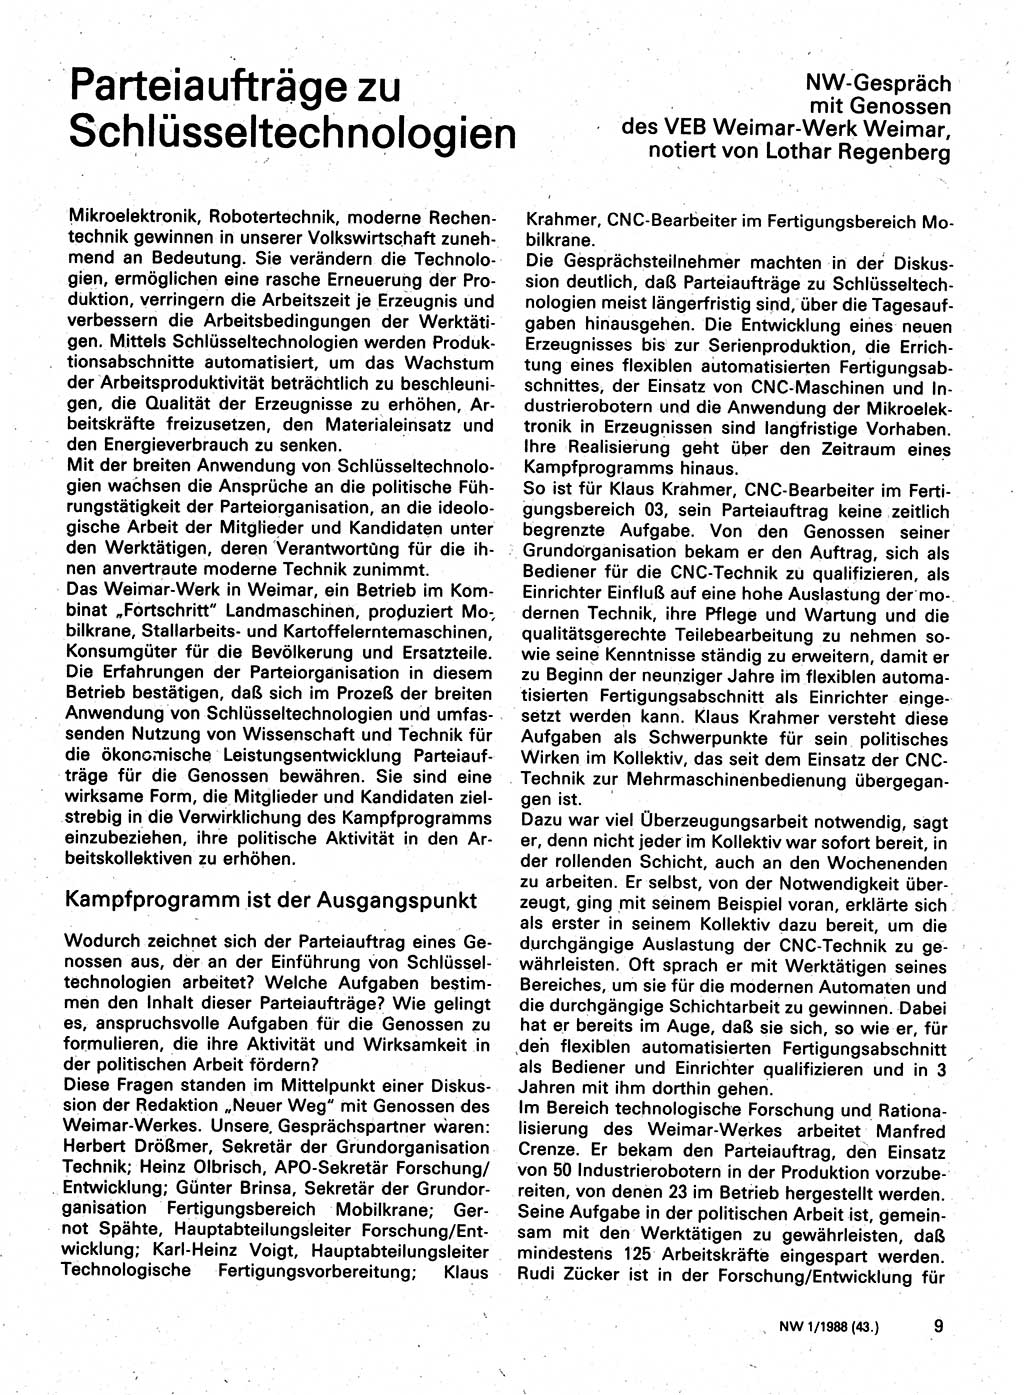 Neuer Weg (NW), Organ des Zentralkomitees (ZK) der SED (Sozialistische Einheitspartei Deutschlands) für Fragen des Parteilebens, 43. Jahrgang [Deutsche Demokratische Republik (DDR)] 1988, Seite 9 (NW ZK SED DDR 1988, S. 9)